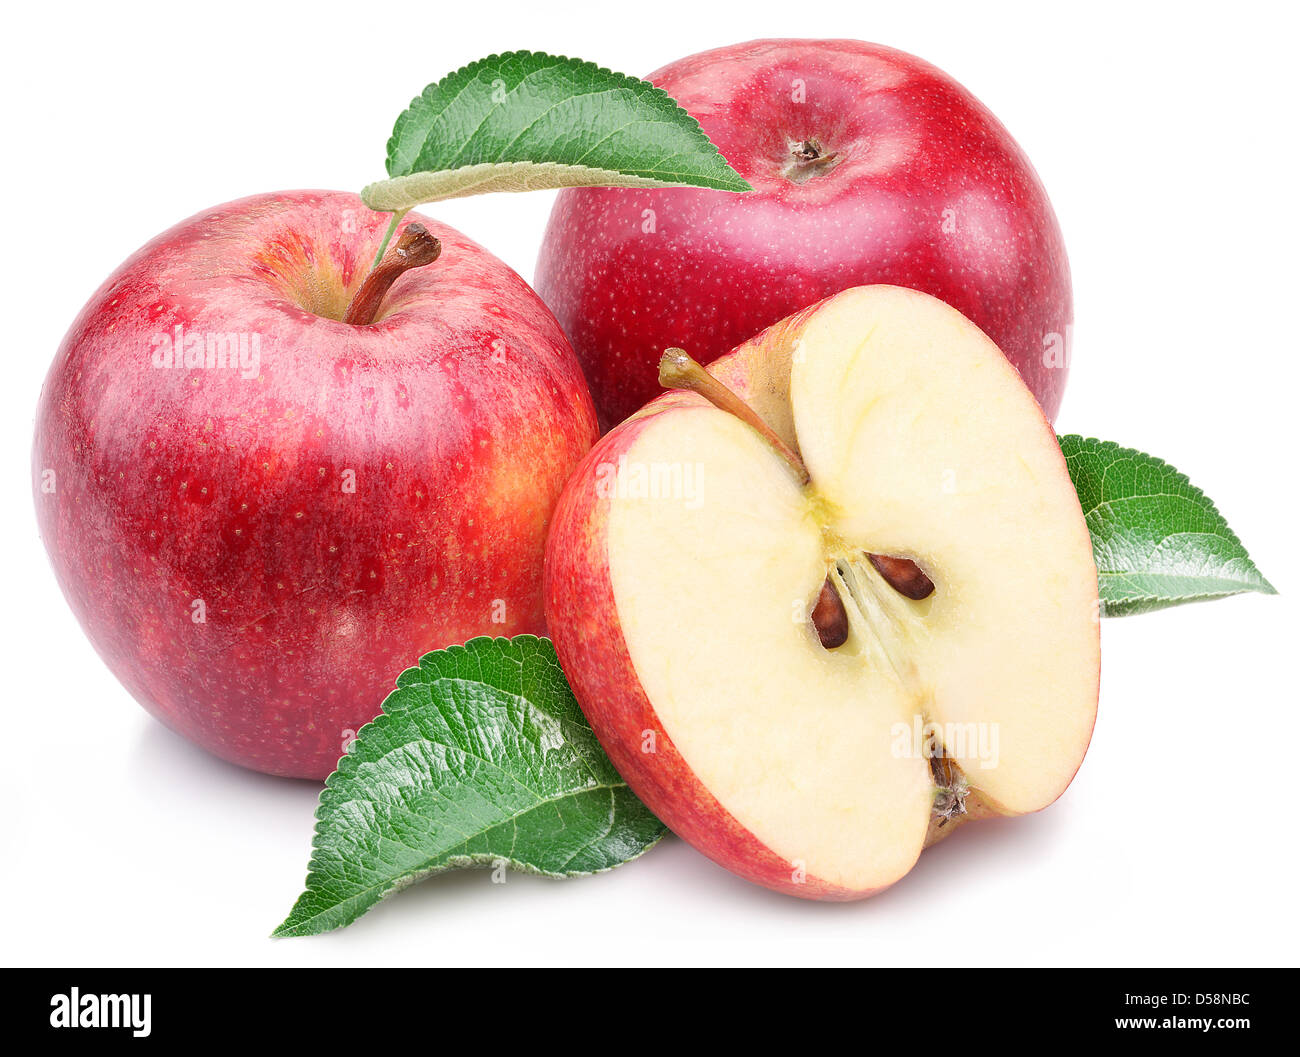 Roter Apfel mit Blatt und Scheibe auf einem weißen Hintergrund. Stockfoto